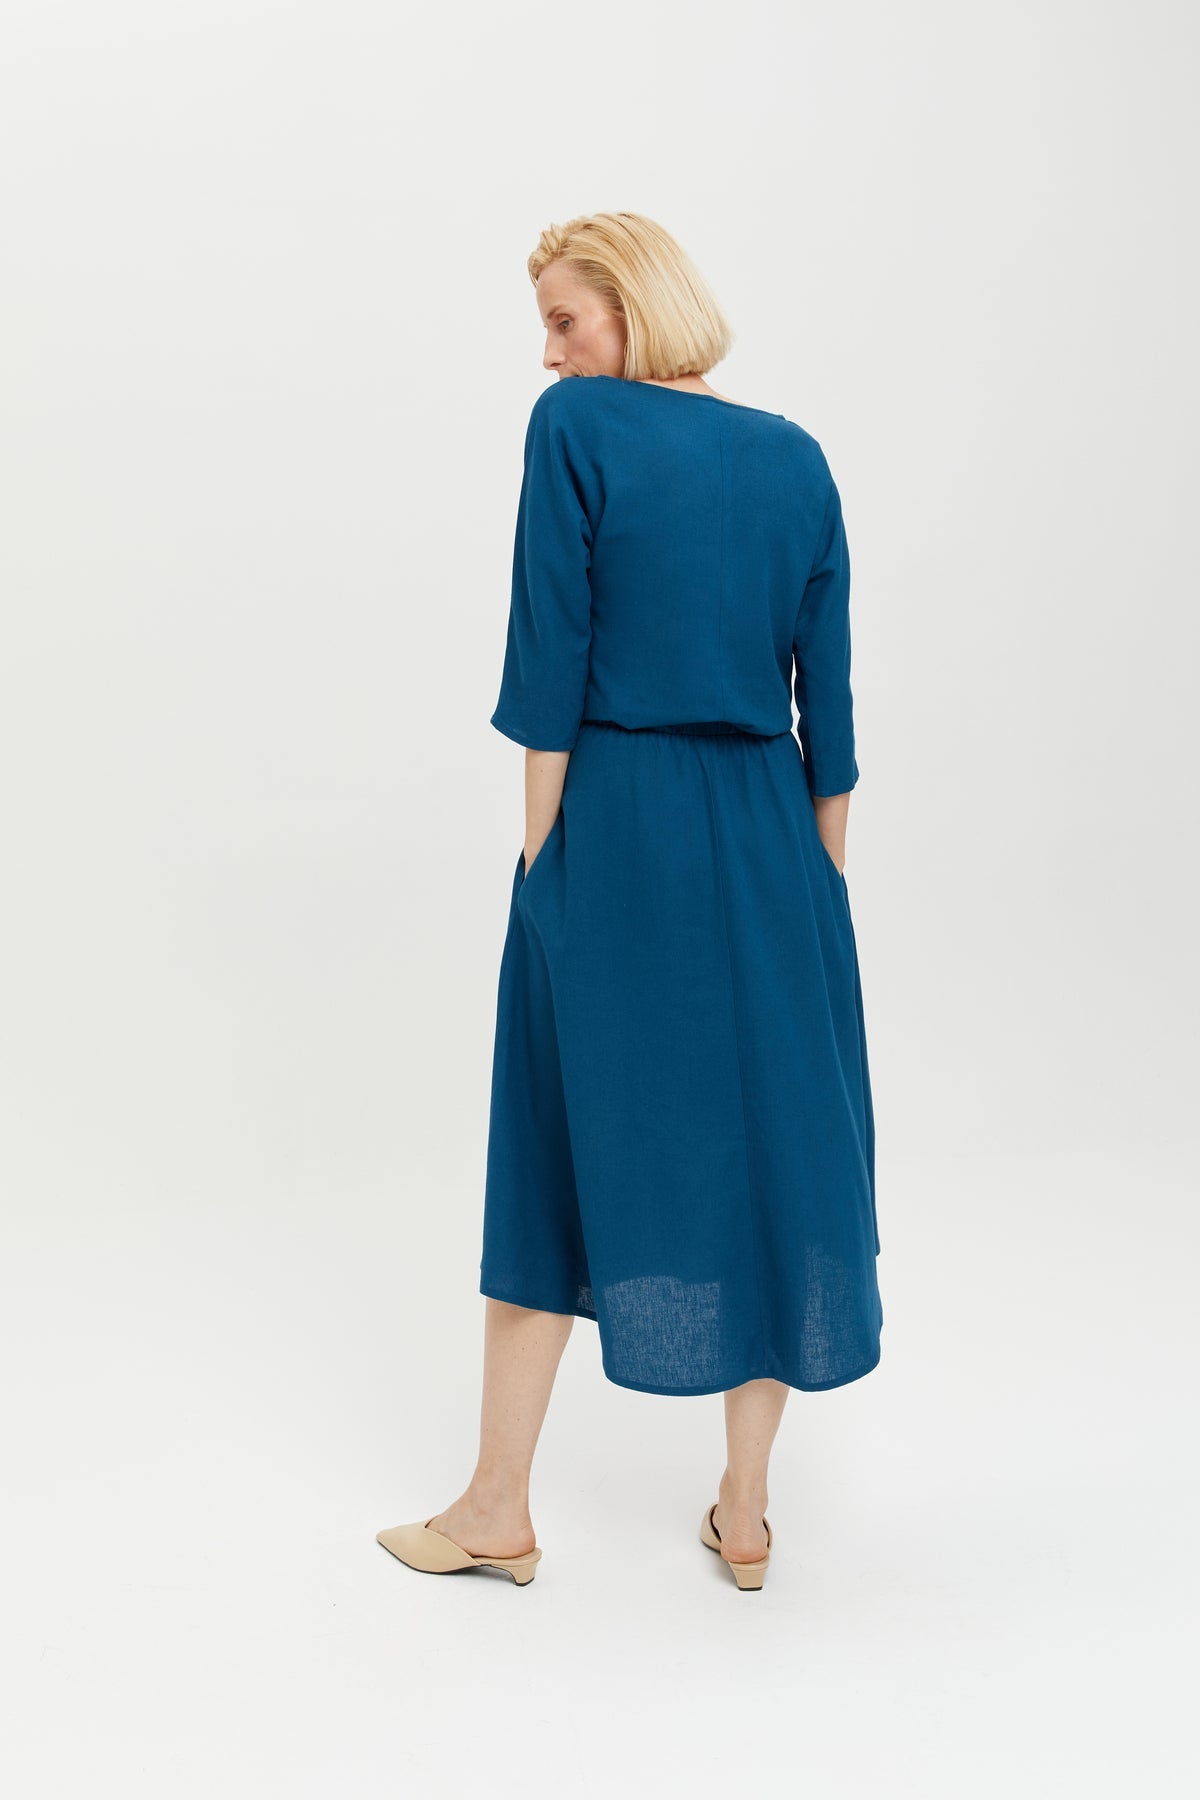 Nane | Leinenkleid mit 3/4 Ärmeln in Petrol-Blau von Ayani